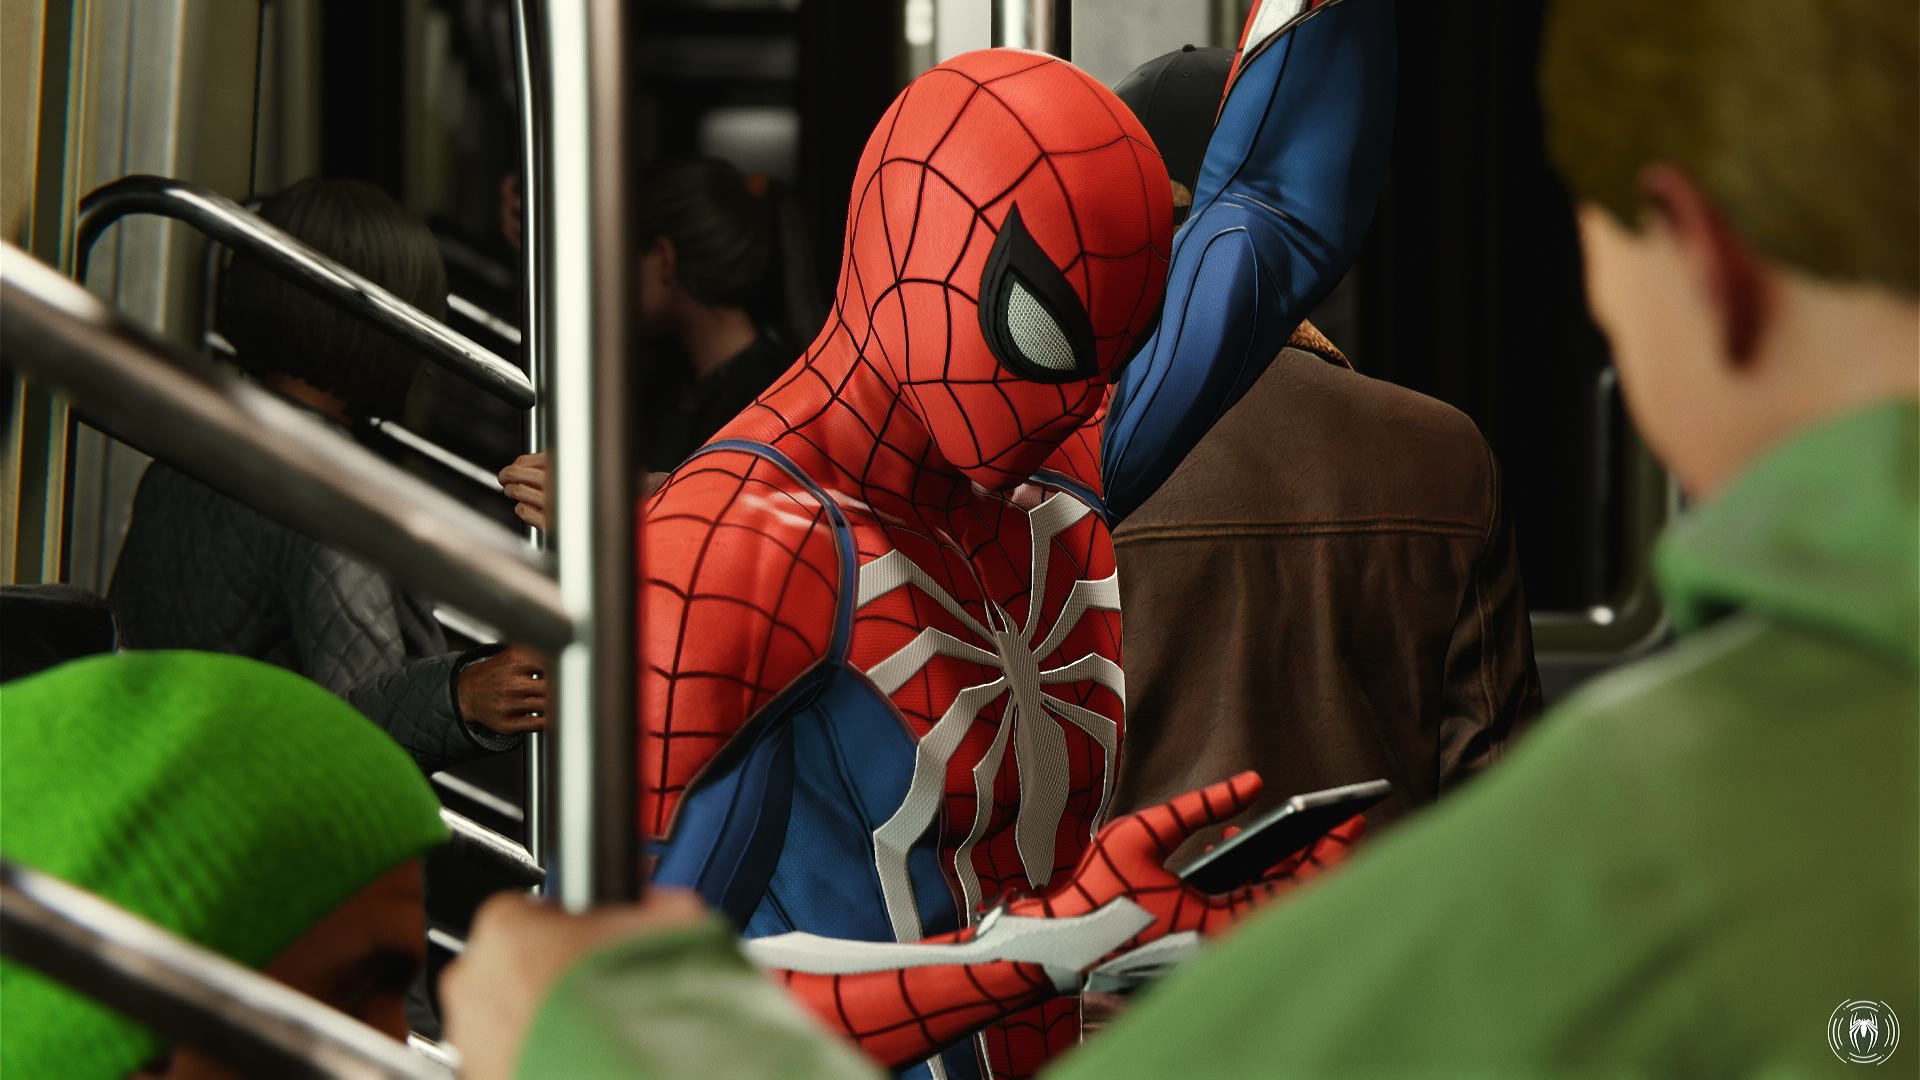 Uzivatel マリア Na Twitteru スパイダーマンだって 普通に地下鉄に乗ります だって楽なんだもの ファストトラベル中の演出なんですが これはかなり楽しいですね Spiderman T Co H0wjtvcaze Twitter